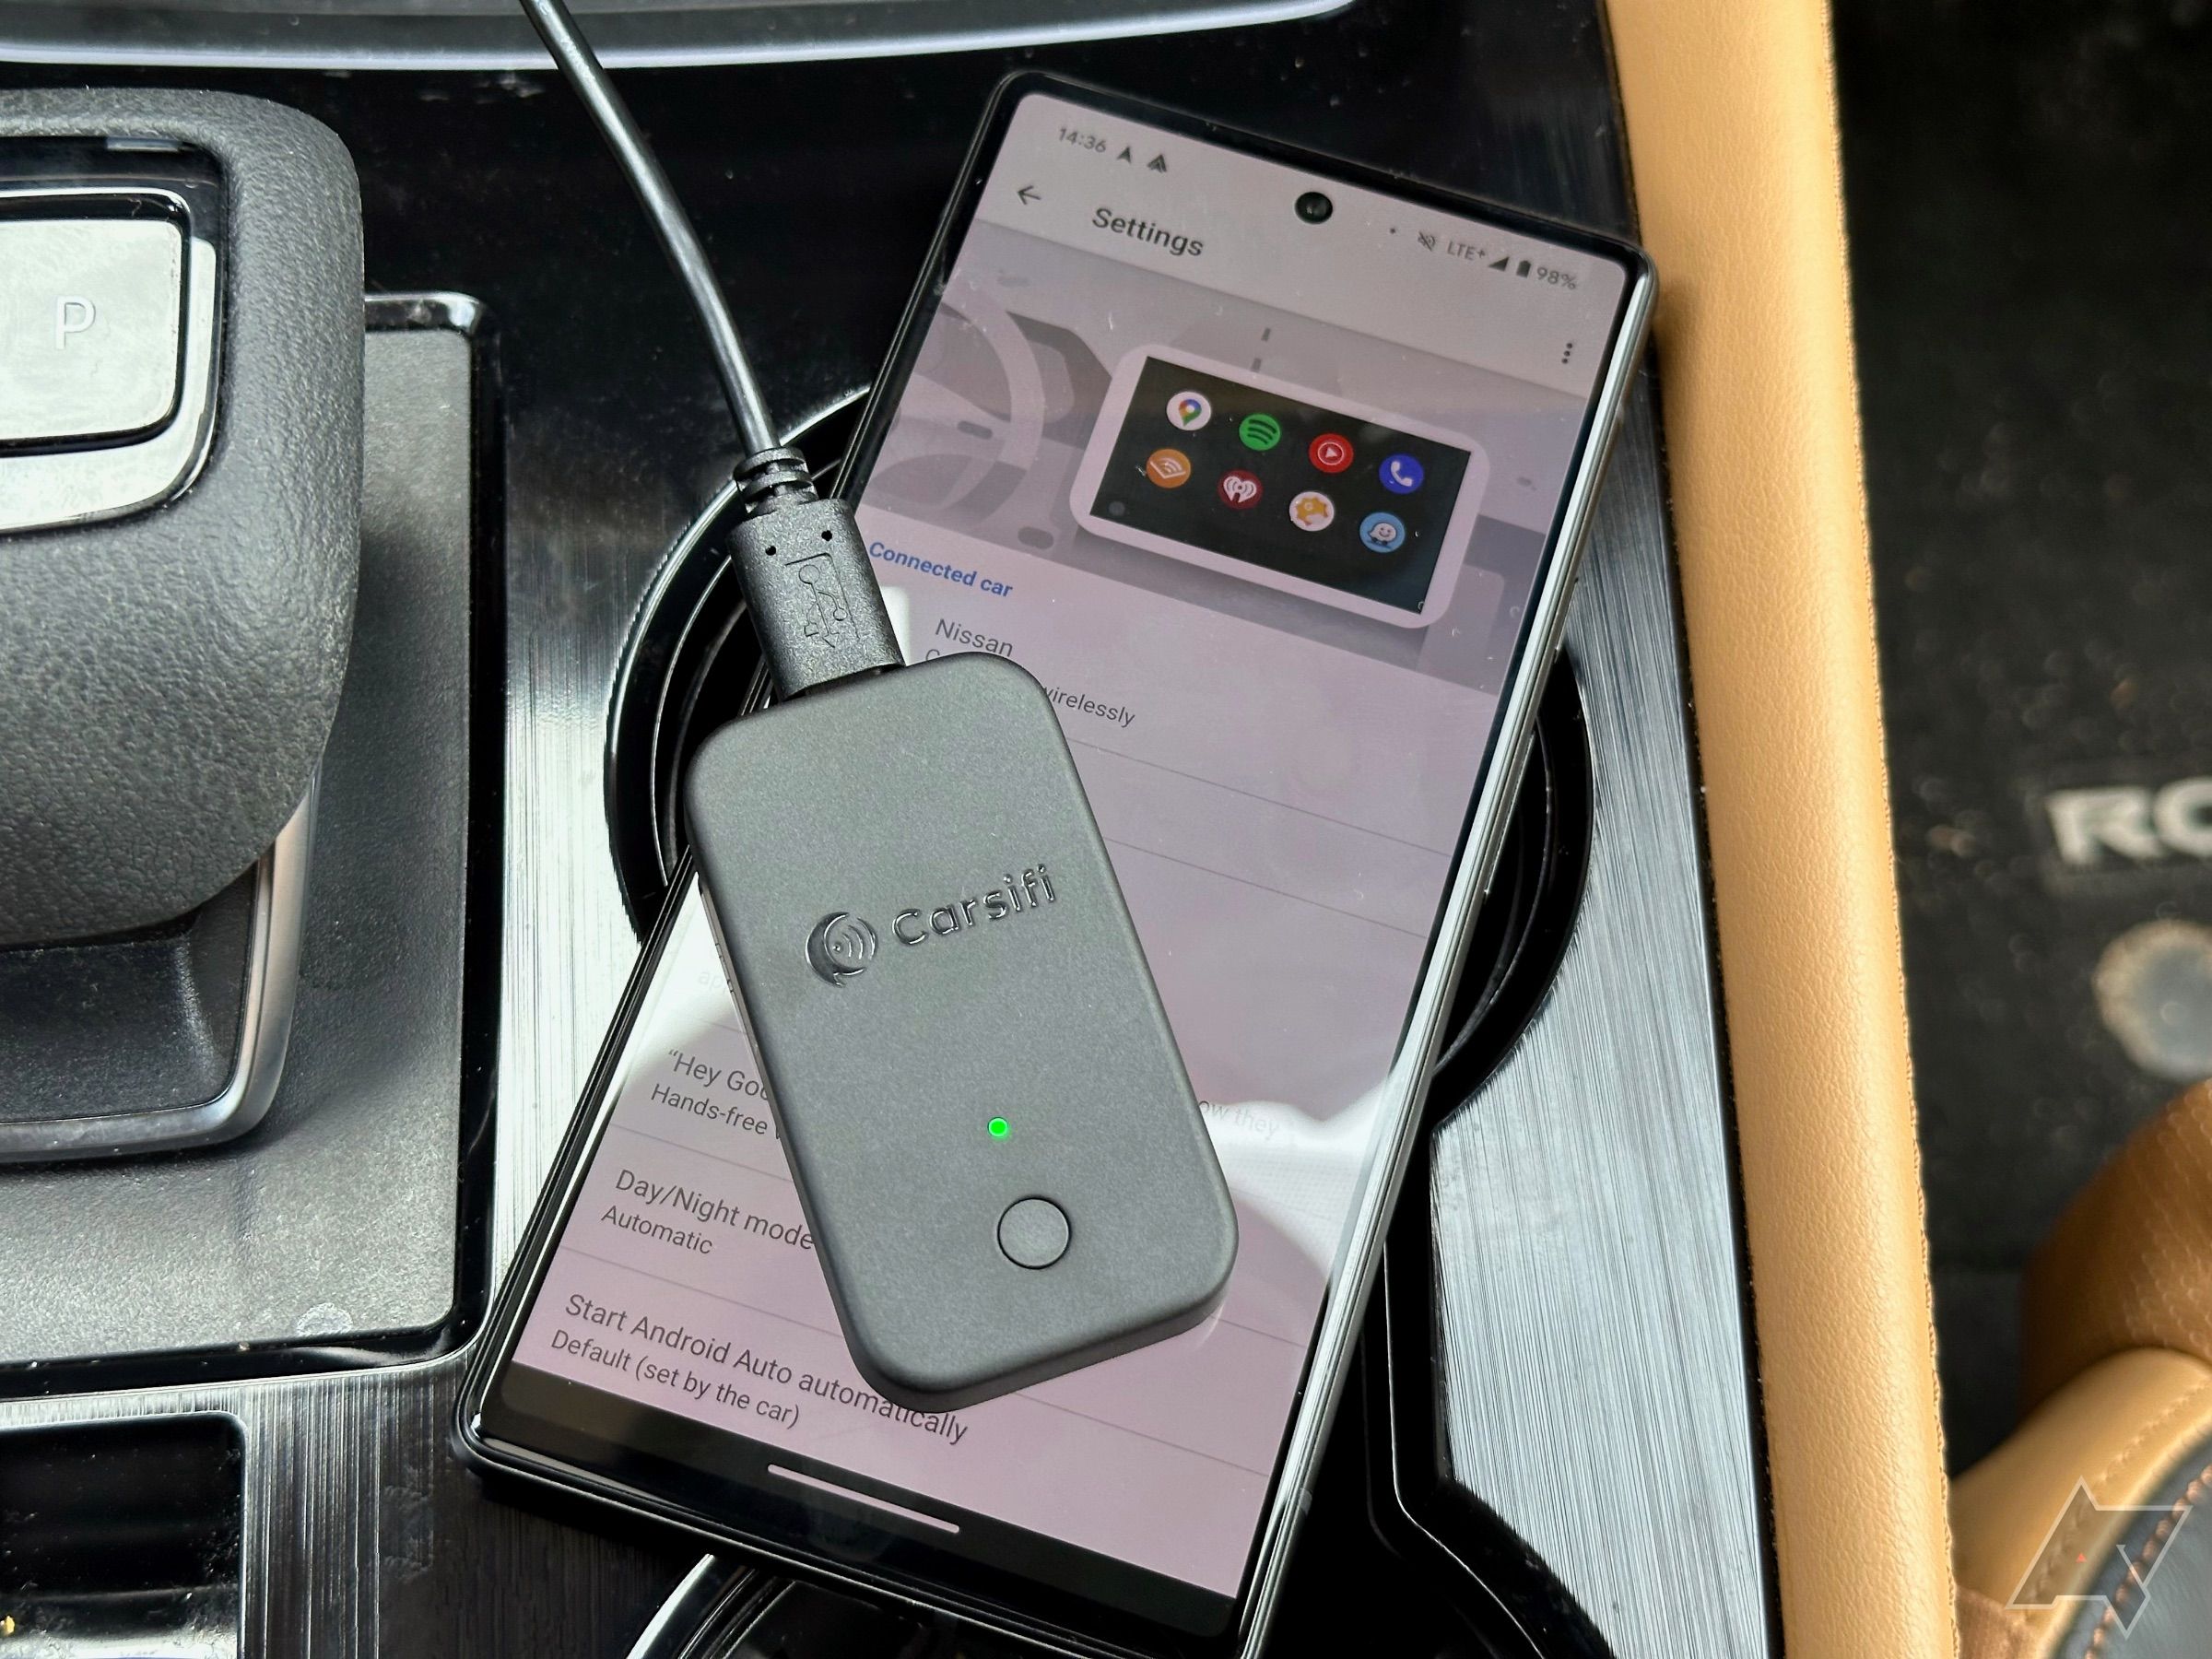 Adaptador Carsifi Wireless Android Auto colocado em cima do Pixel 6 mostrando as configurações do Android Auto no console central do carro.